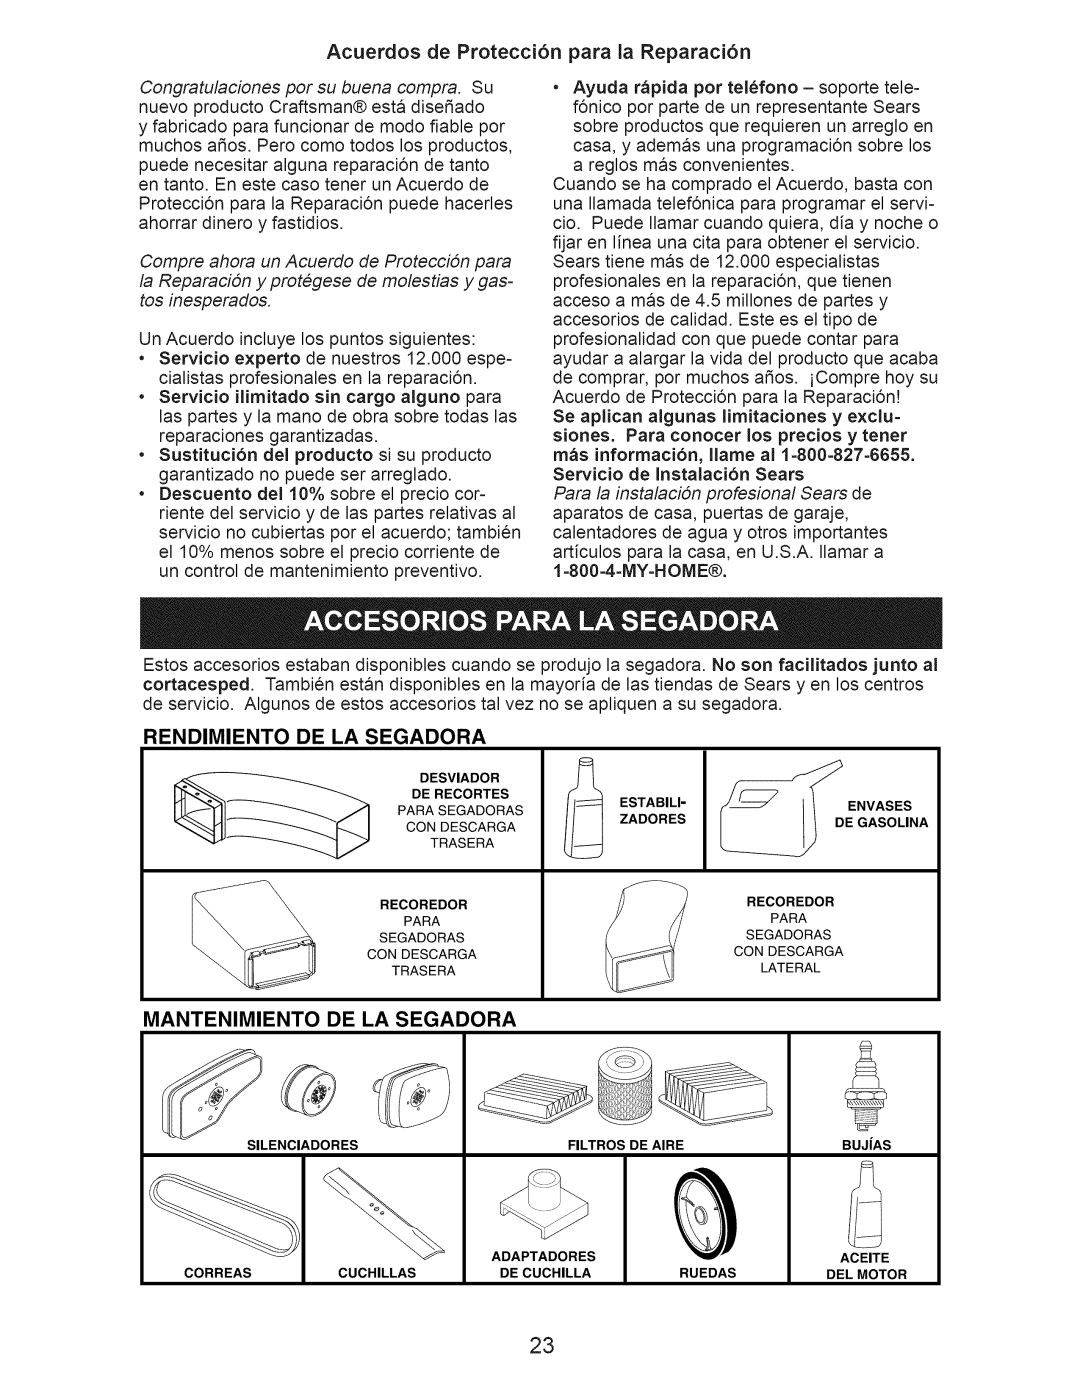 Craftsman 917.374358 owner manual Acuerdos de Protecci6n para la Reparaci6n, Rendimiento, De La Segadora, Mantenimiento 